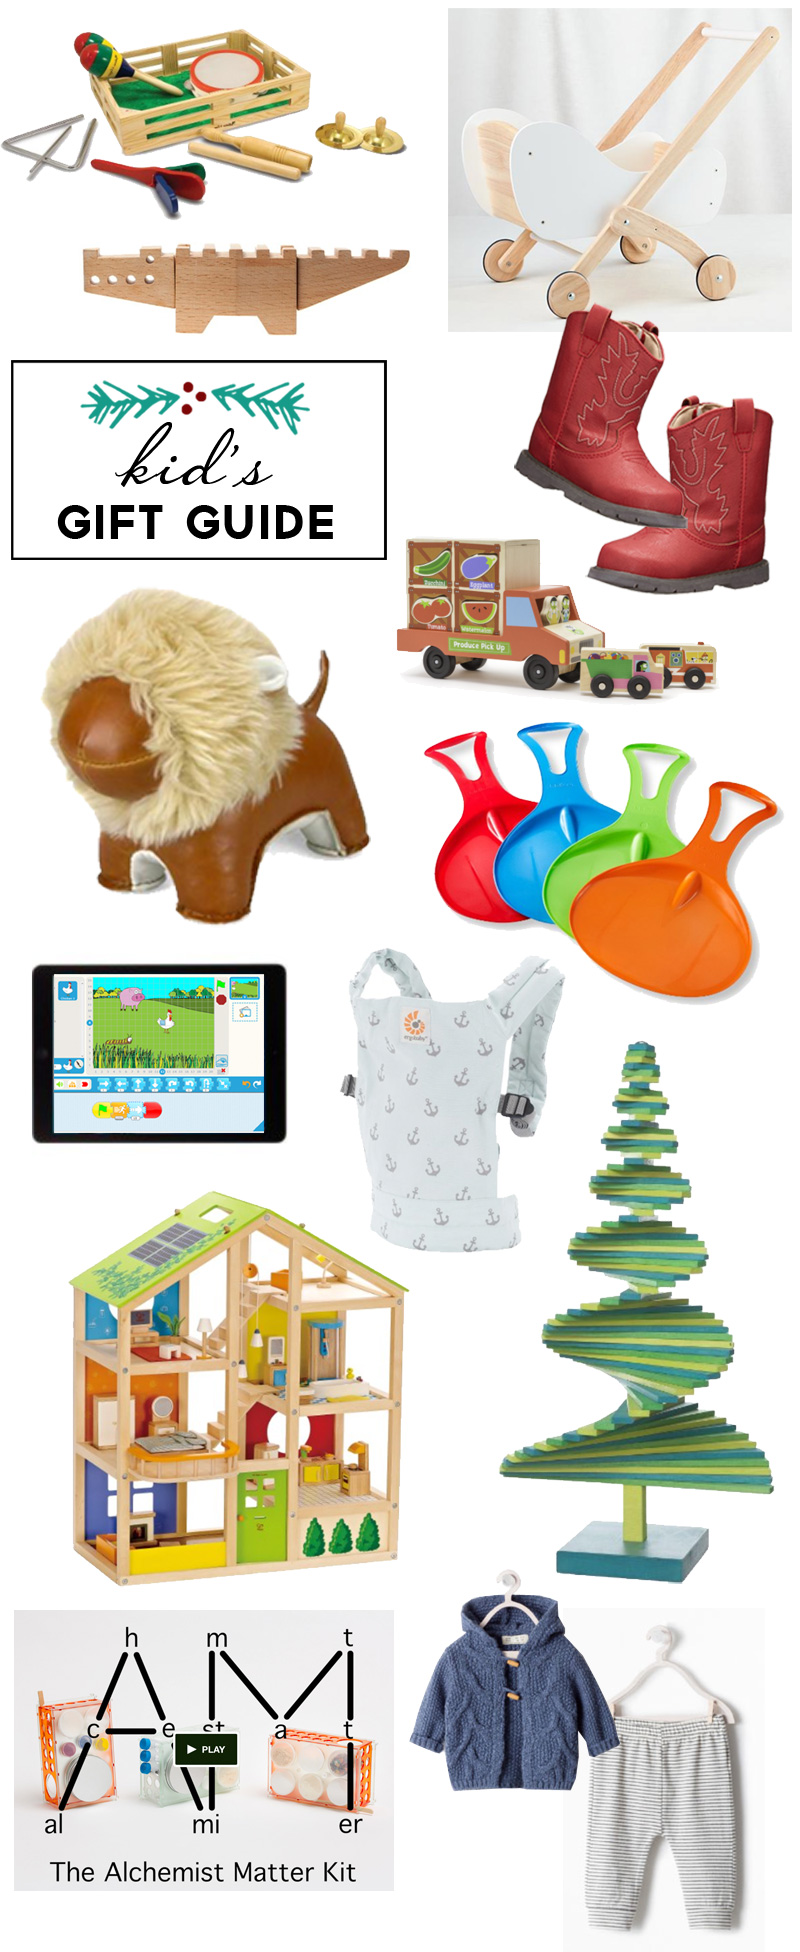 Kid's Gift Guide: Christmas 2014 | PepperDesignBlog.com